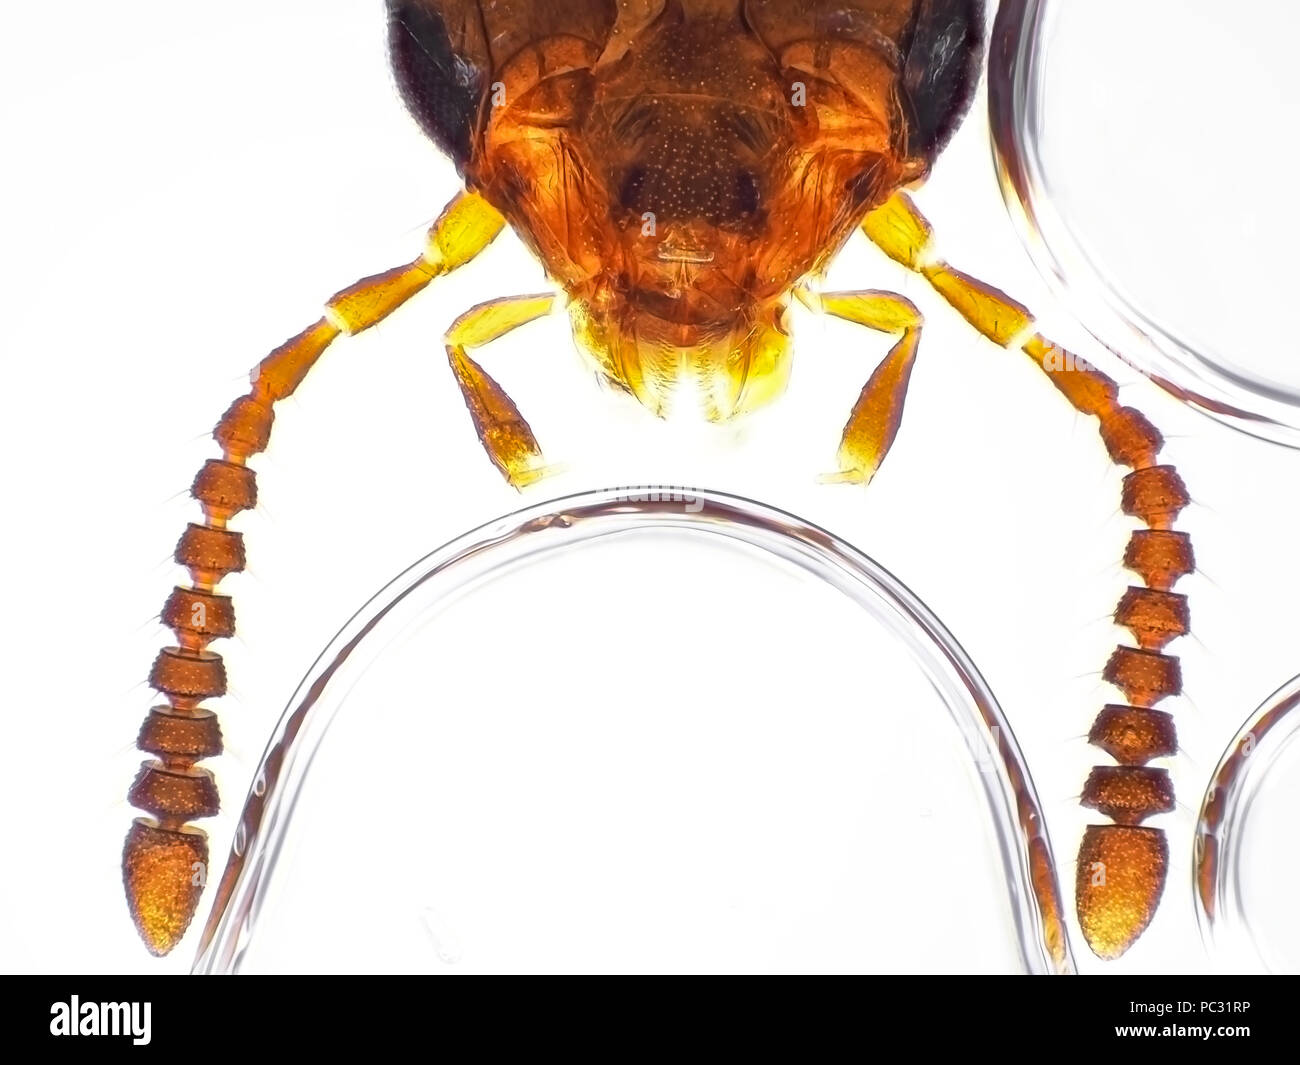 Micrografía de luz de un pequeño escarabajo de Rove (Staphylinidae) jefe de área, la foto es de aproximadamente 1 mm de ancho Foto de stock